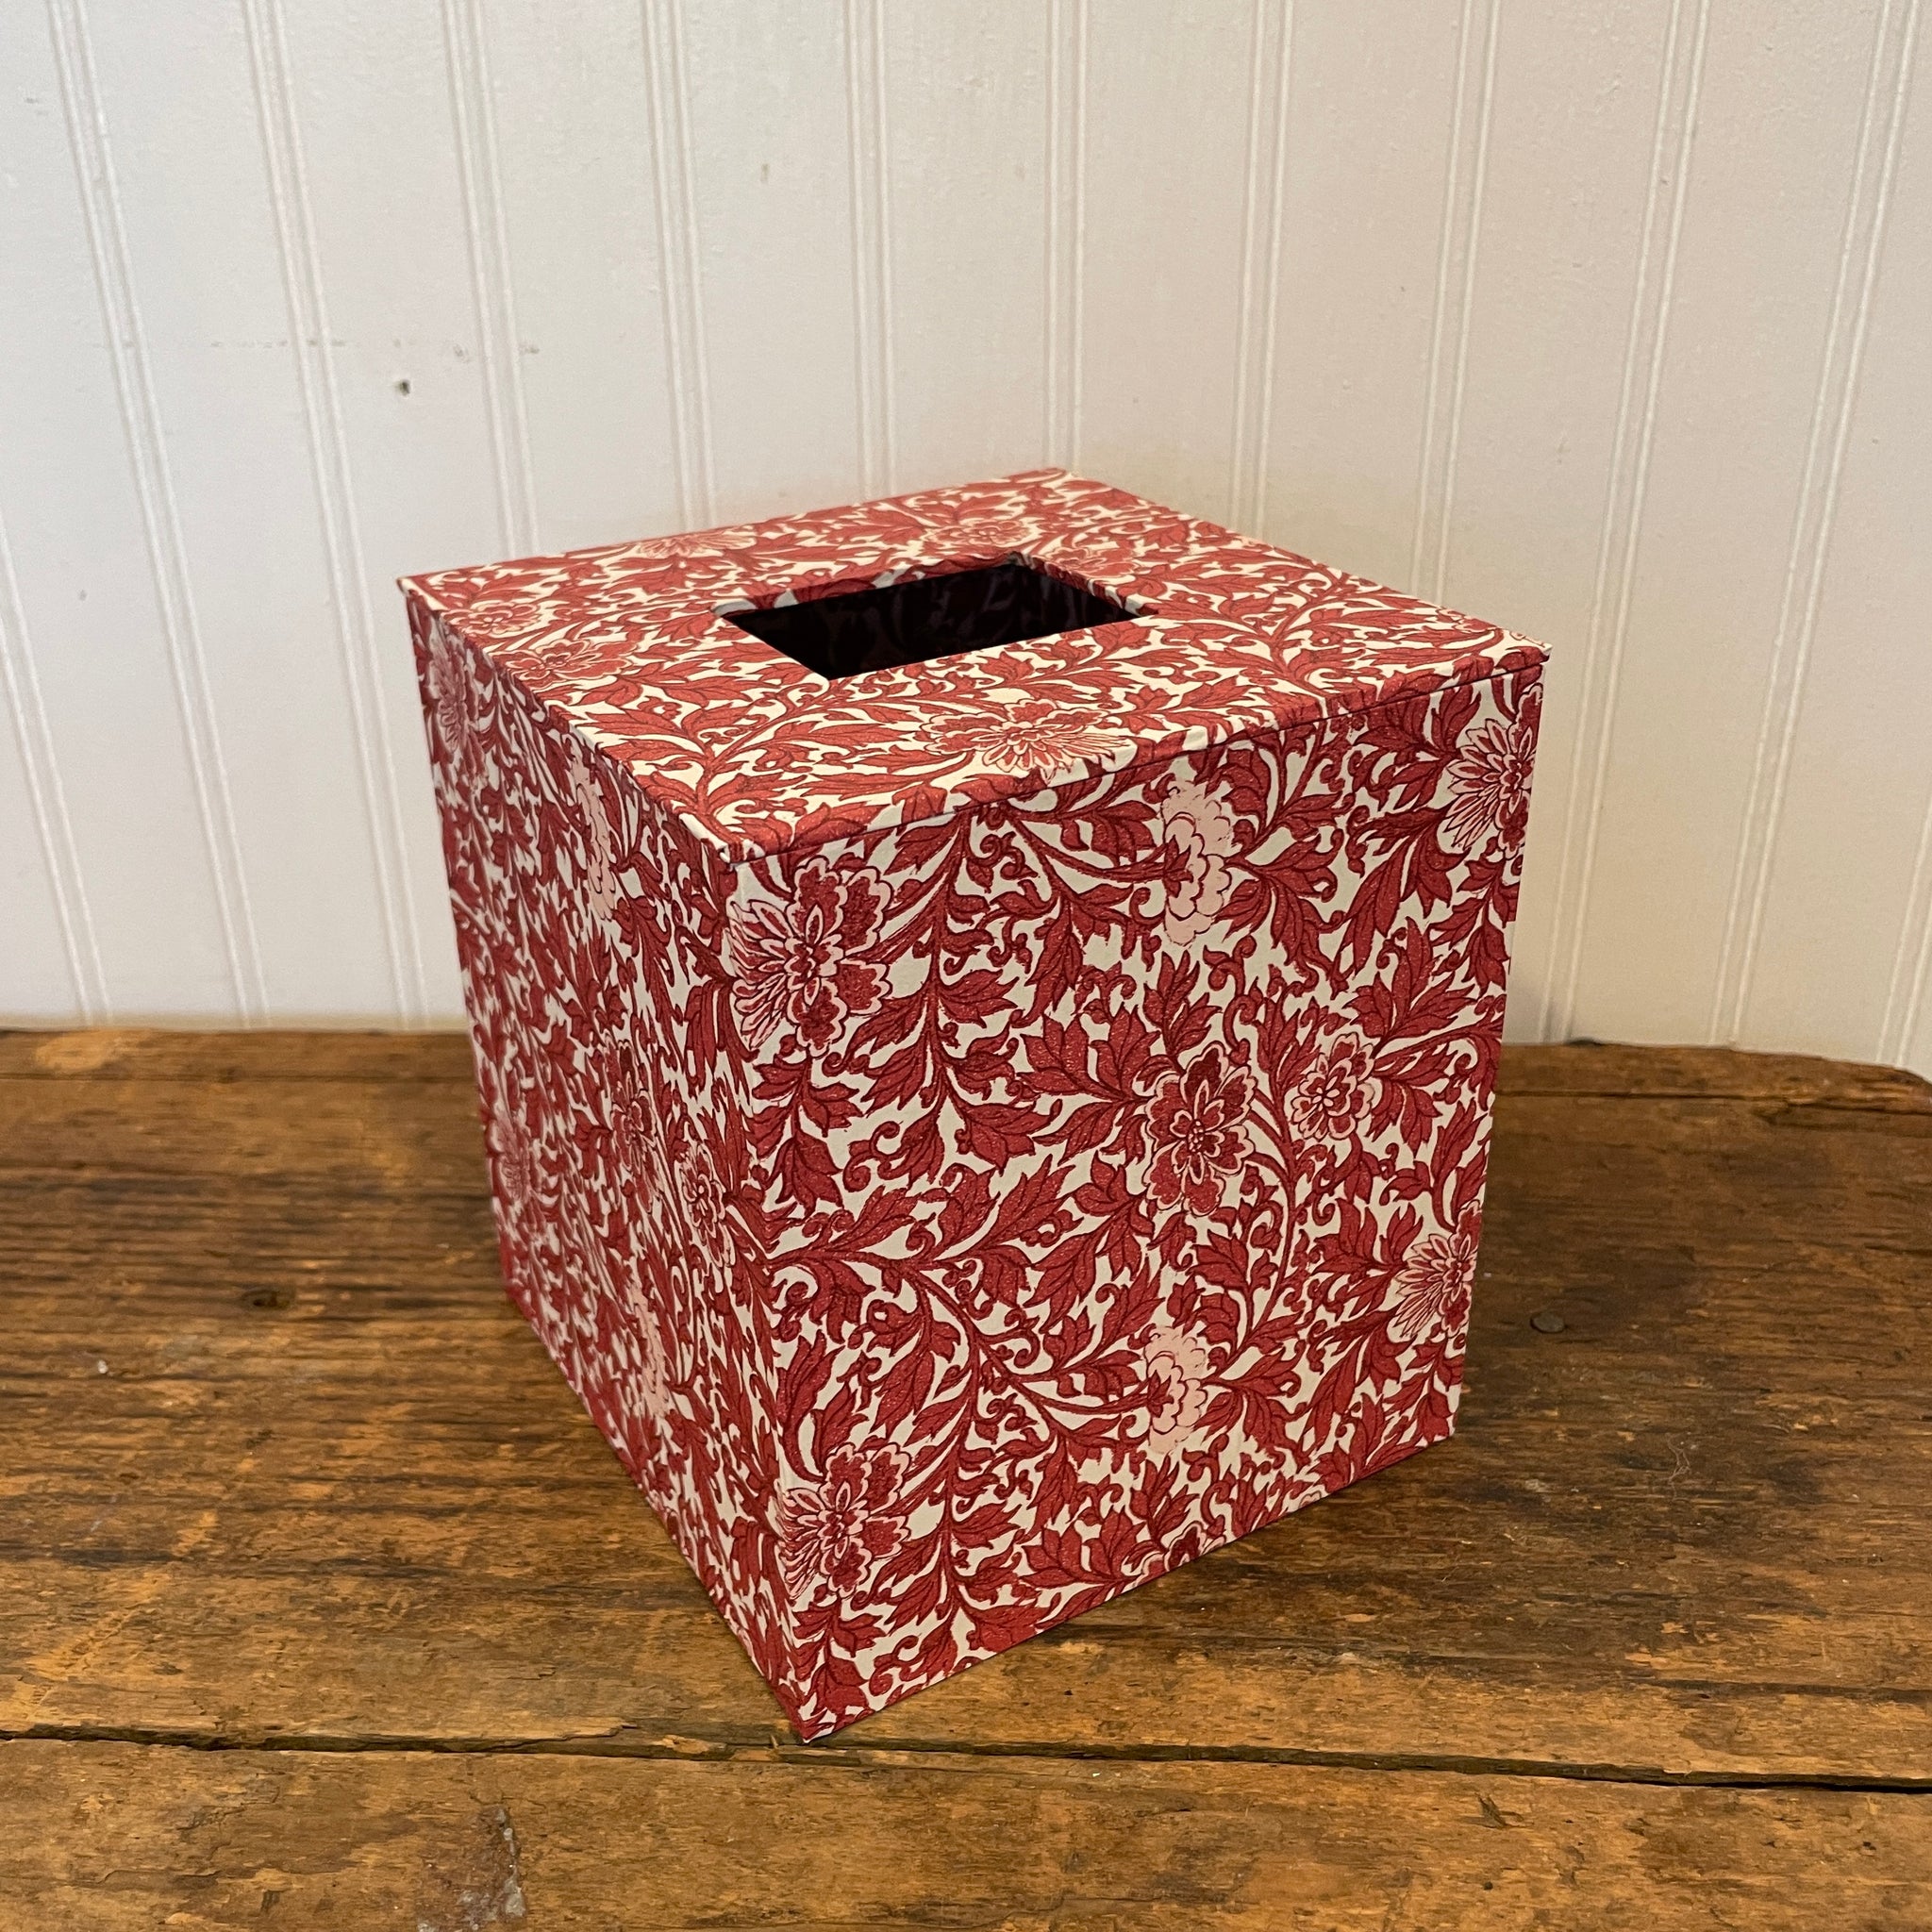 Square Tissue Box Cover